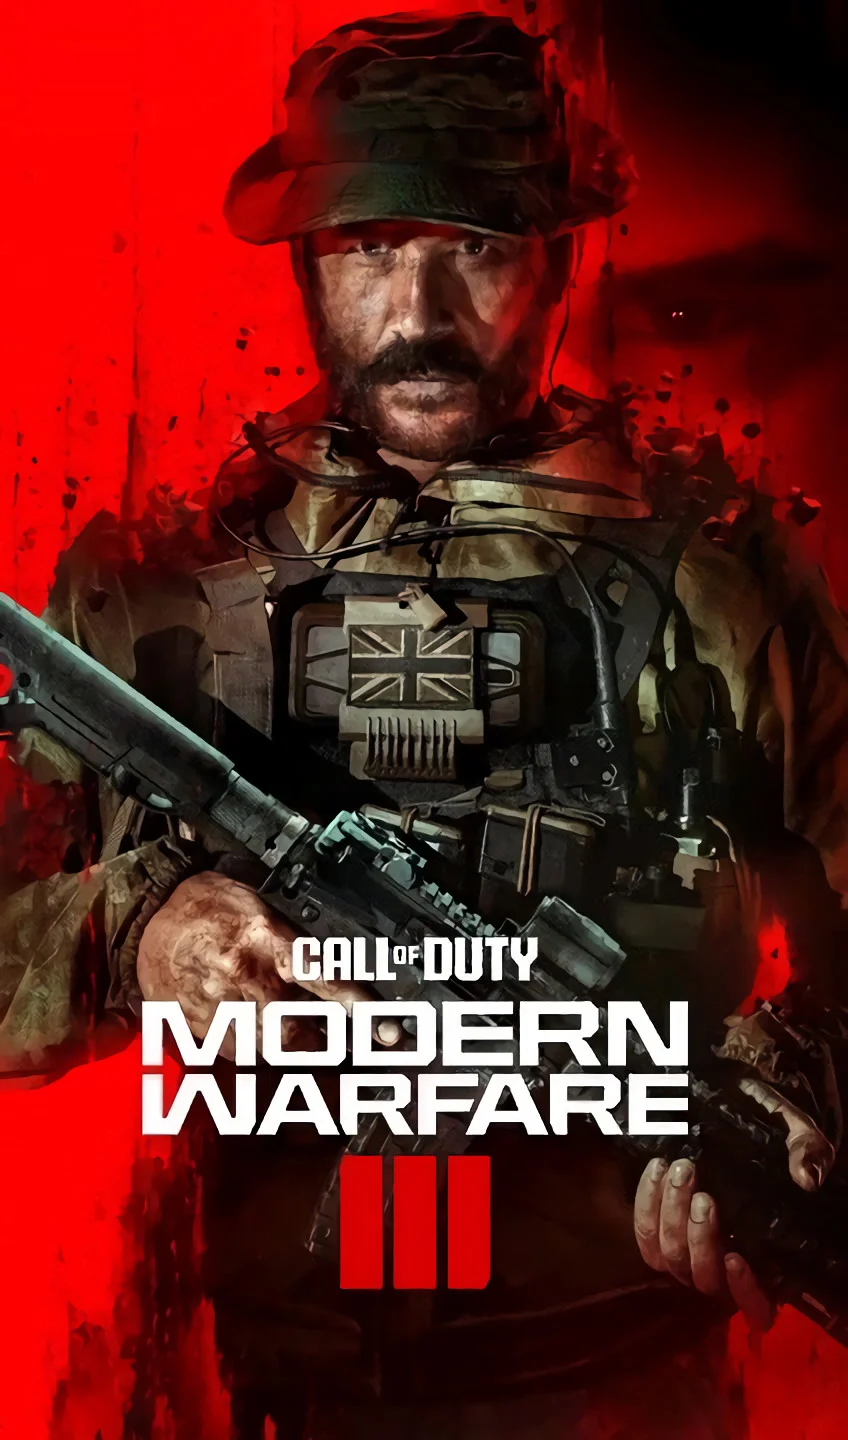 Проверить углы, проверить углы! В сеть попали постеры Call of Duty: Modern Warfare 3 с Капитаном Прайсом